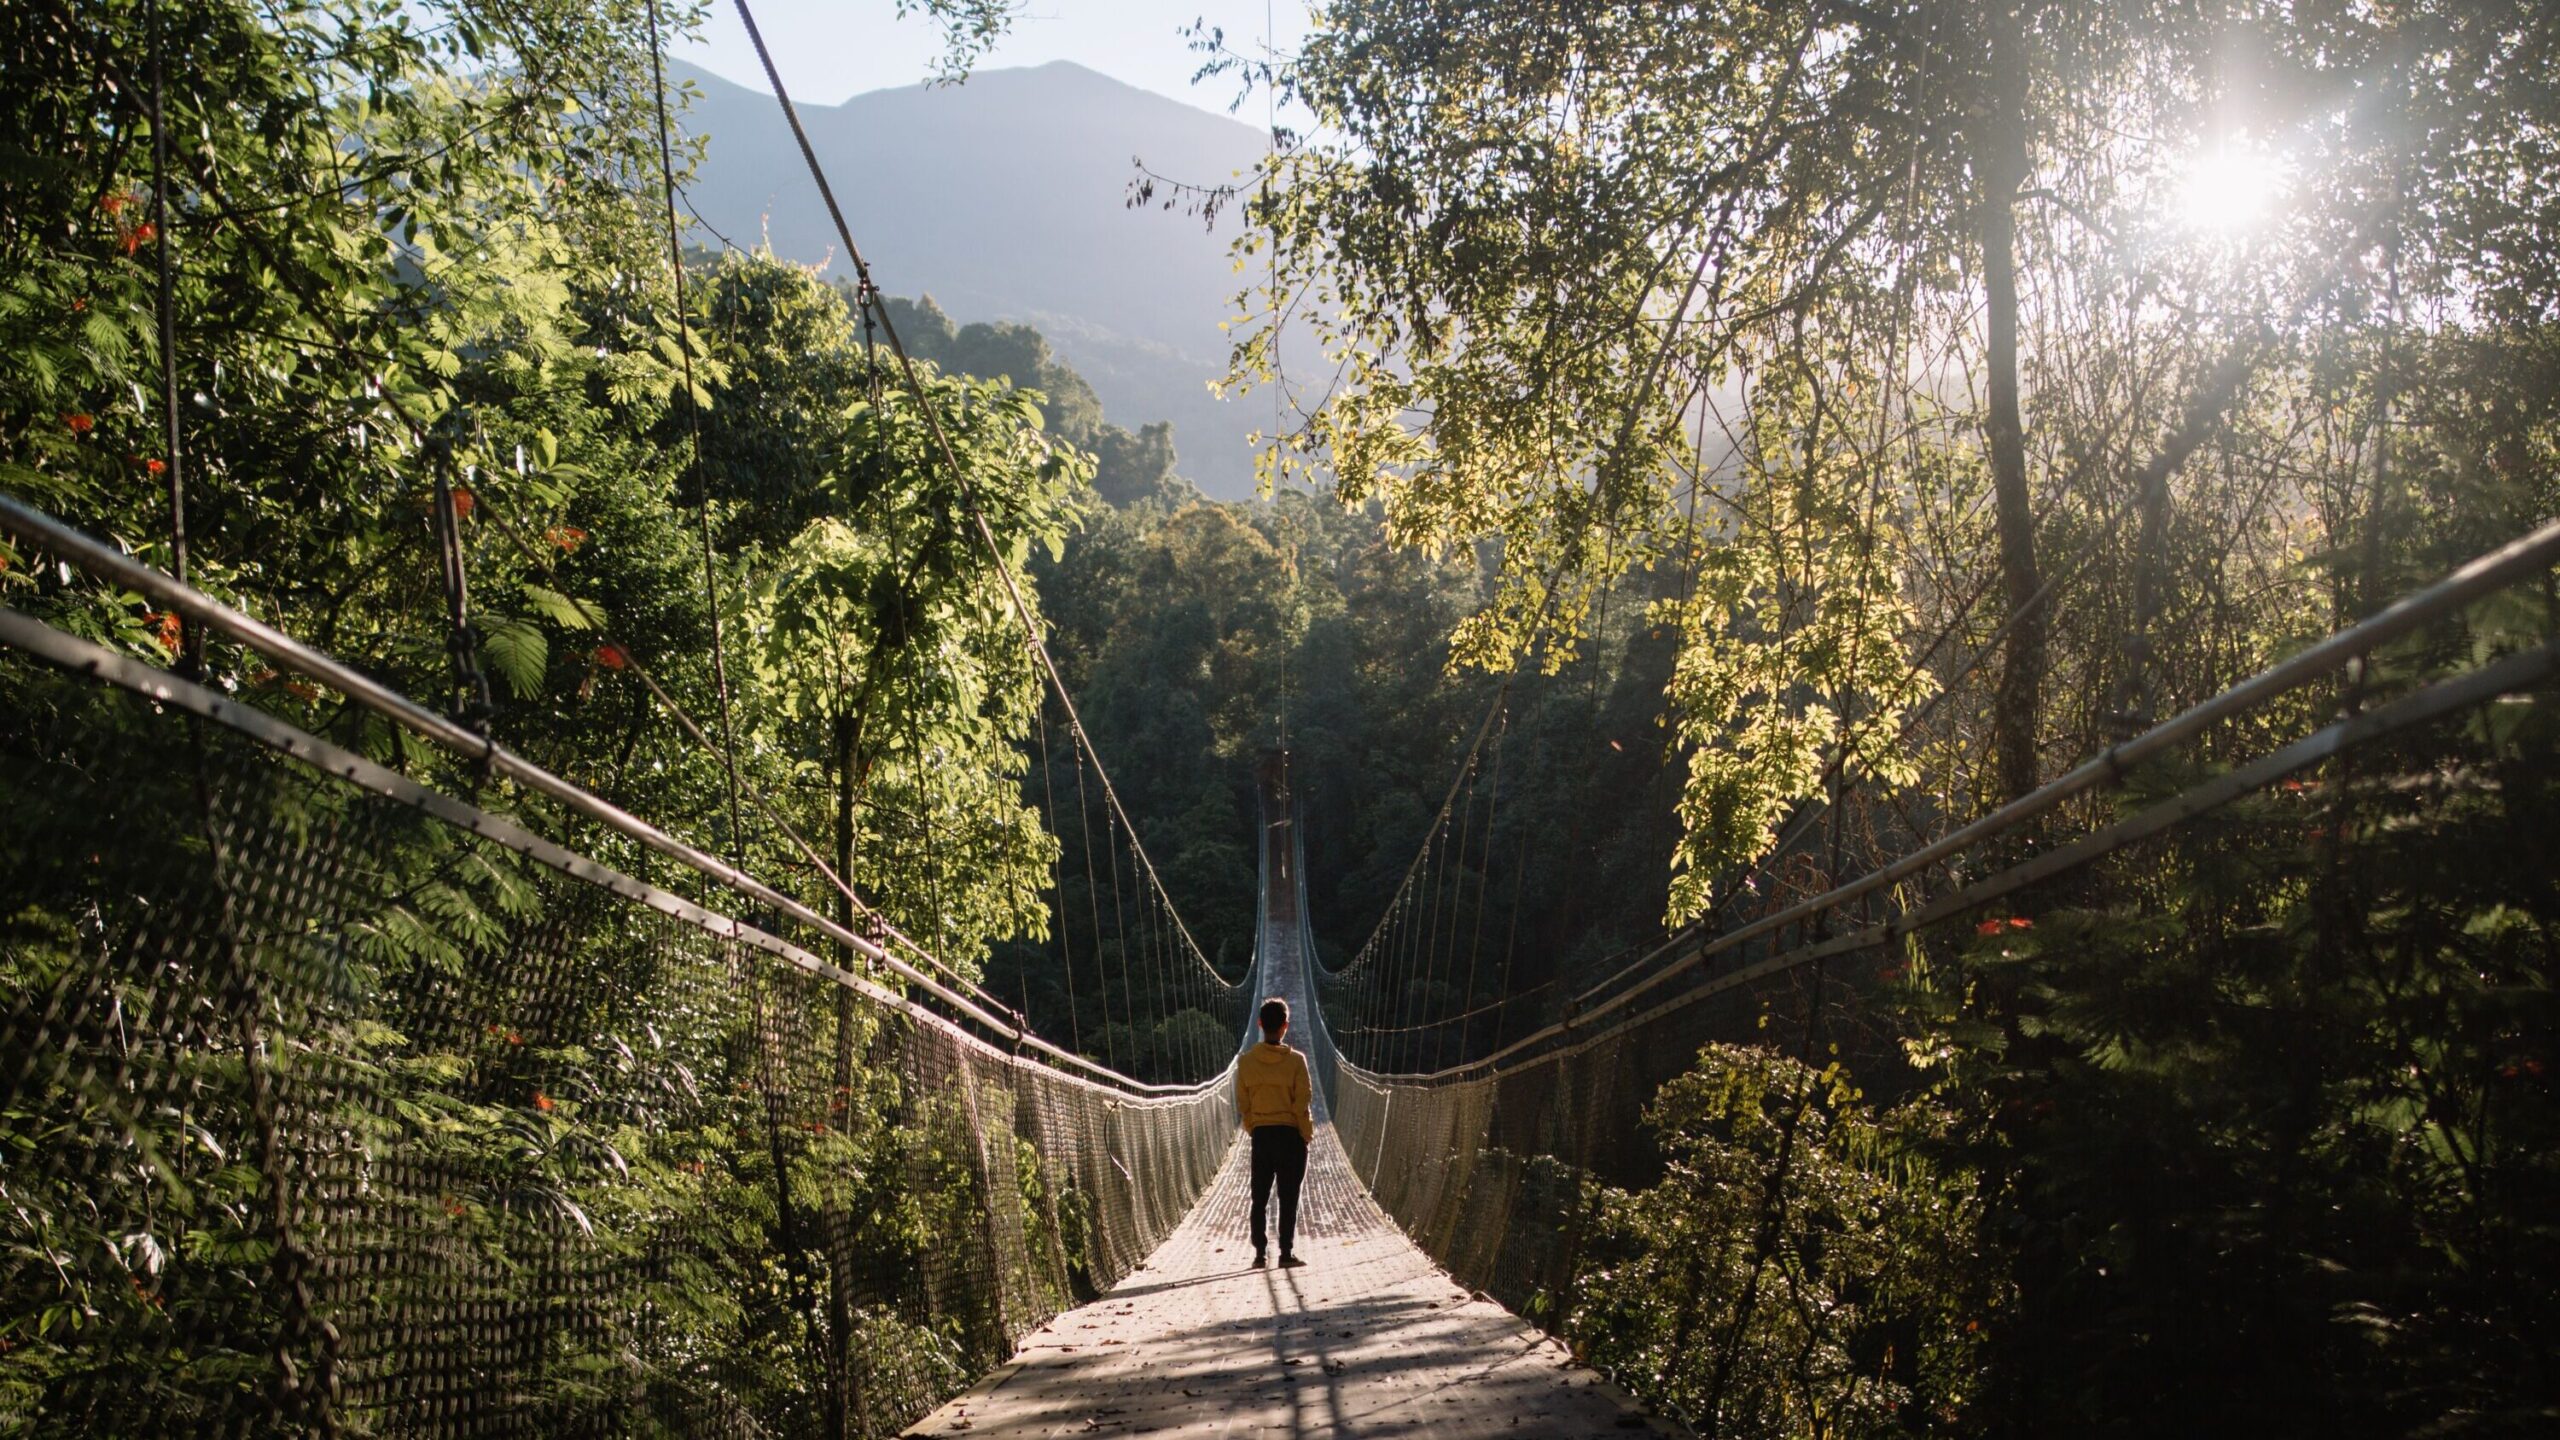 Mann auf einer Hängebrücke im Wald bei gutem Wetter